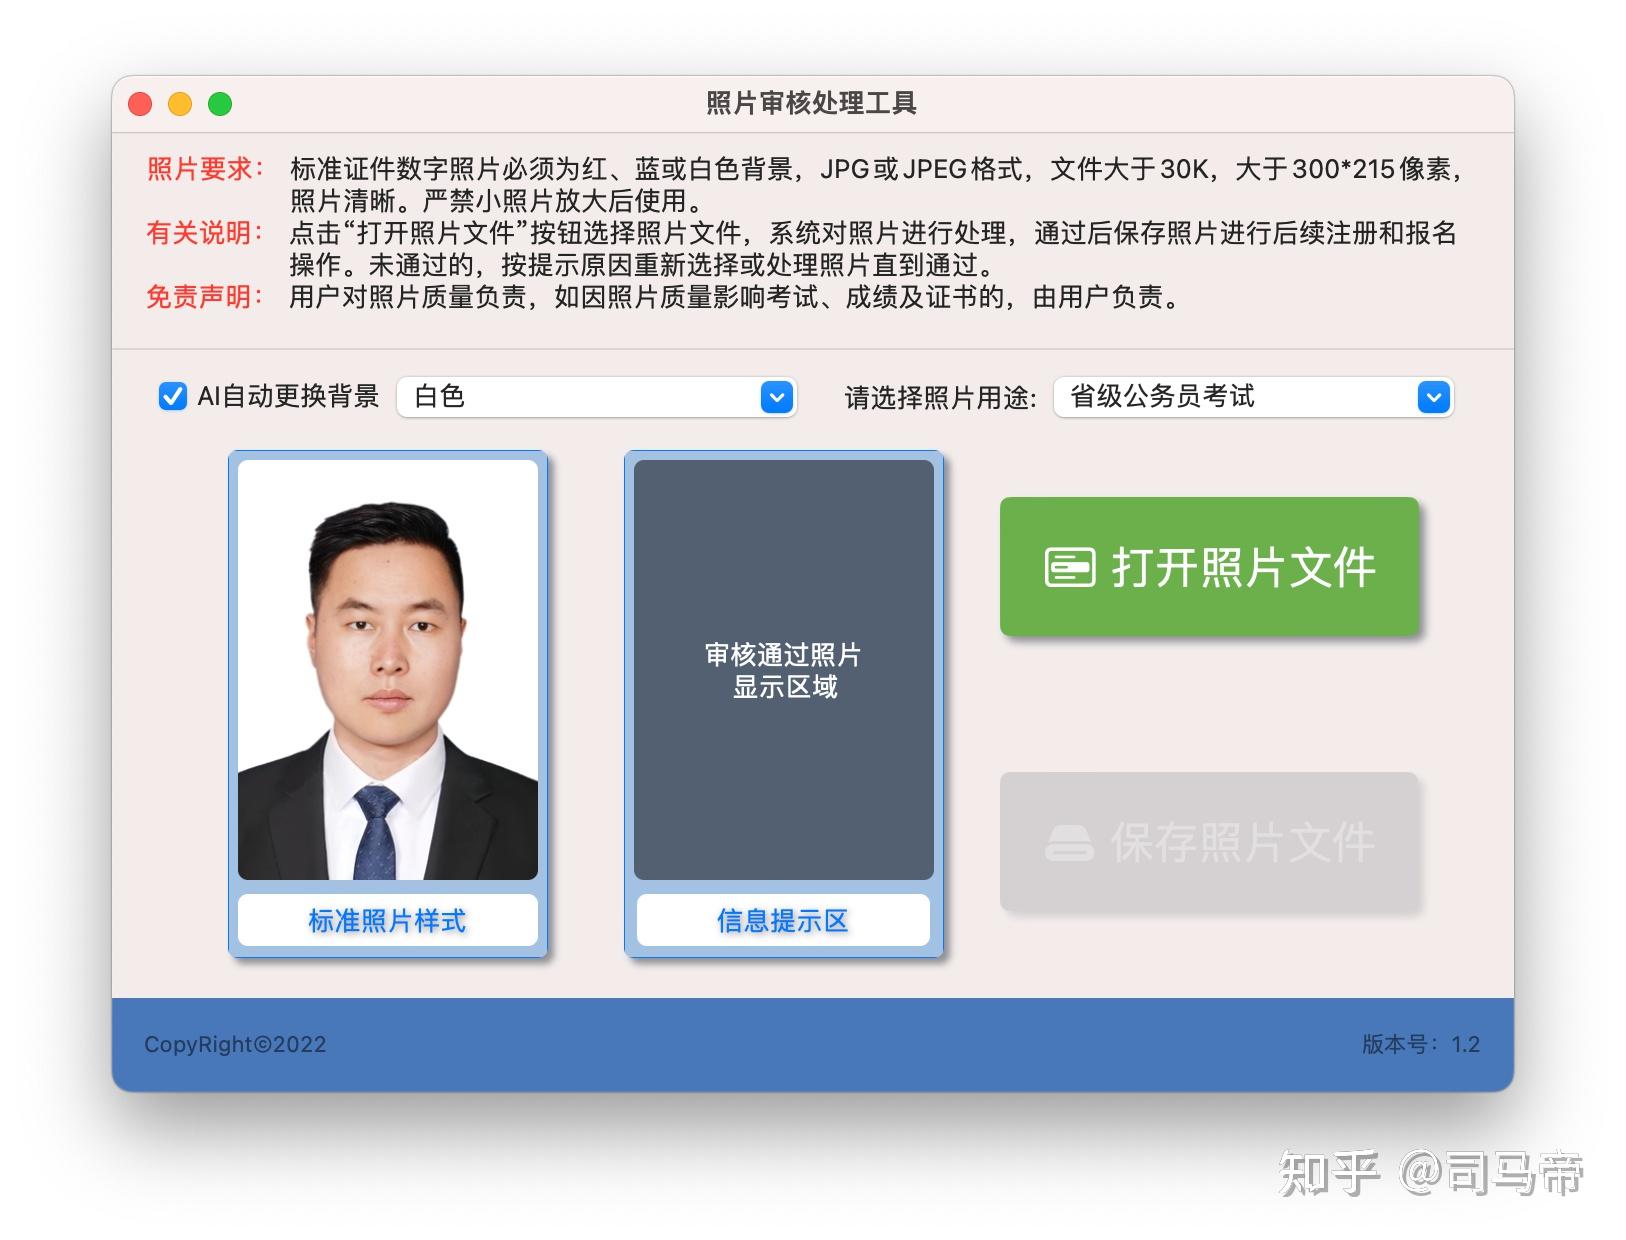 初级会计报名照片要求、照片审核处理工具如何使用-搜狐大视野-搜狐新闻